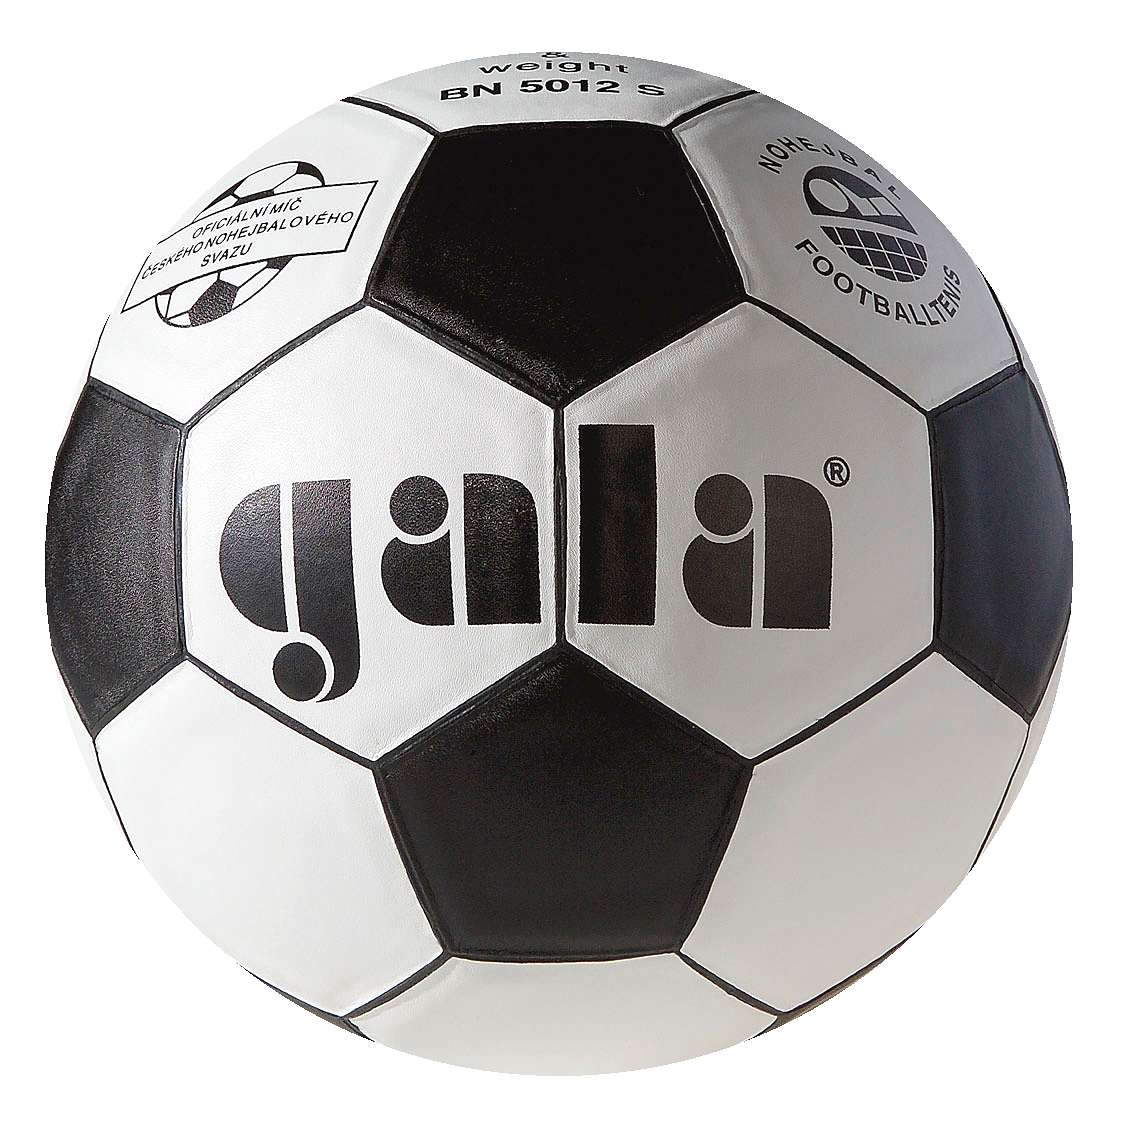 Gala Fußballtennis-Ball "BN 5012 S" von Gala